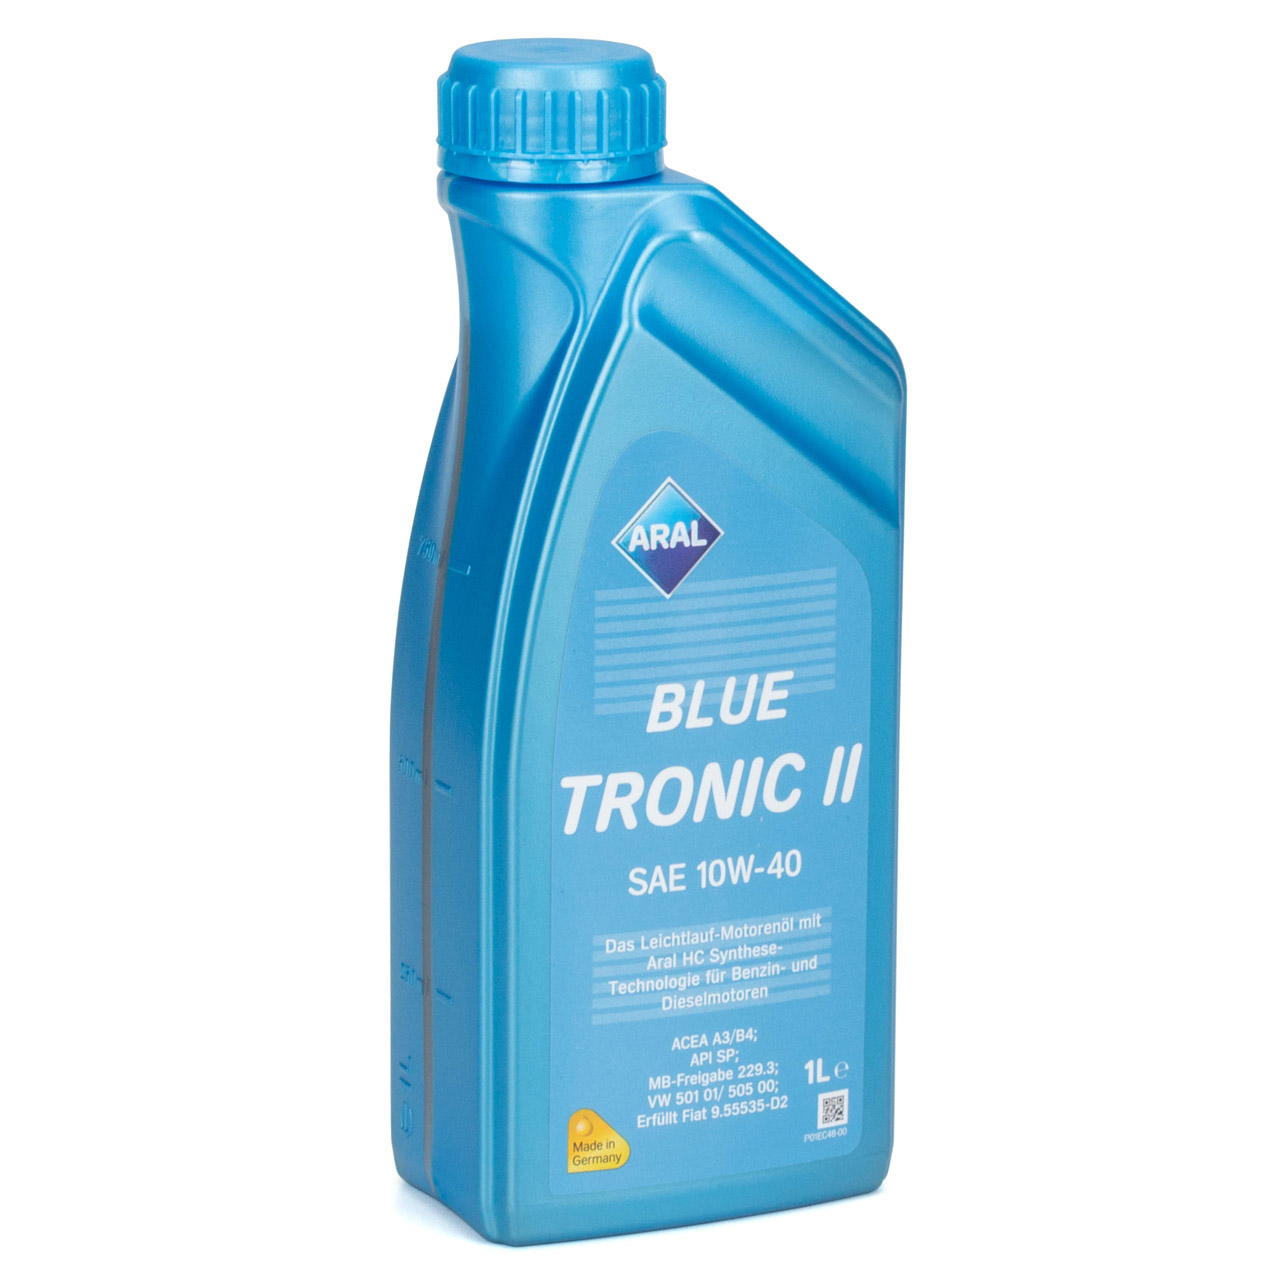 8L 8 Liter ARAL BLUE TRONIC II 10W-40 Motoröl Öl MB 229.3 VW 501.01/505.00 FIAT 9.55535-D2